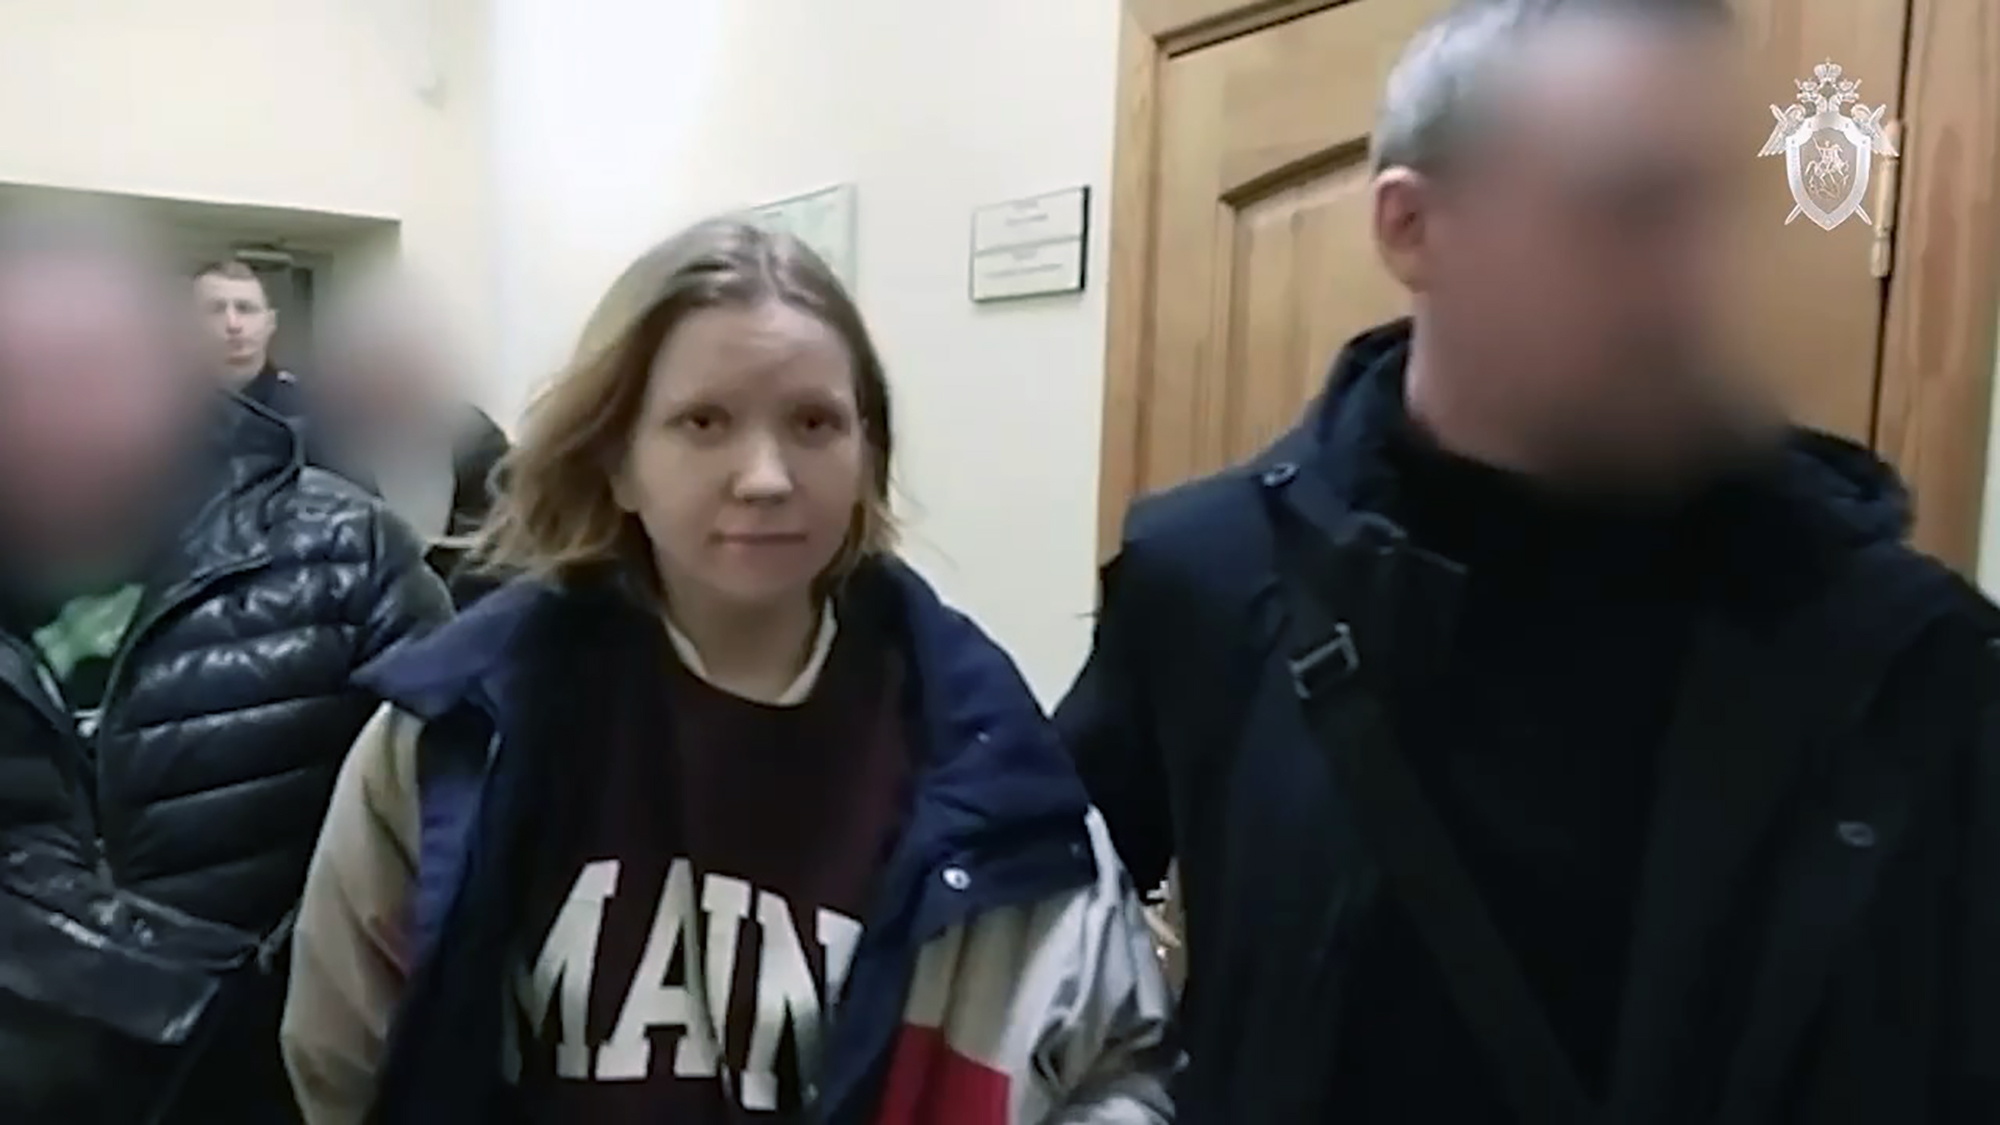 Николаю васильеву было предъявлено обвинение в совершении